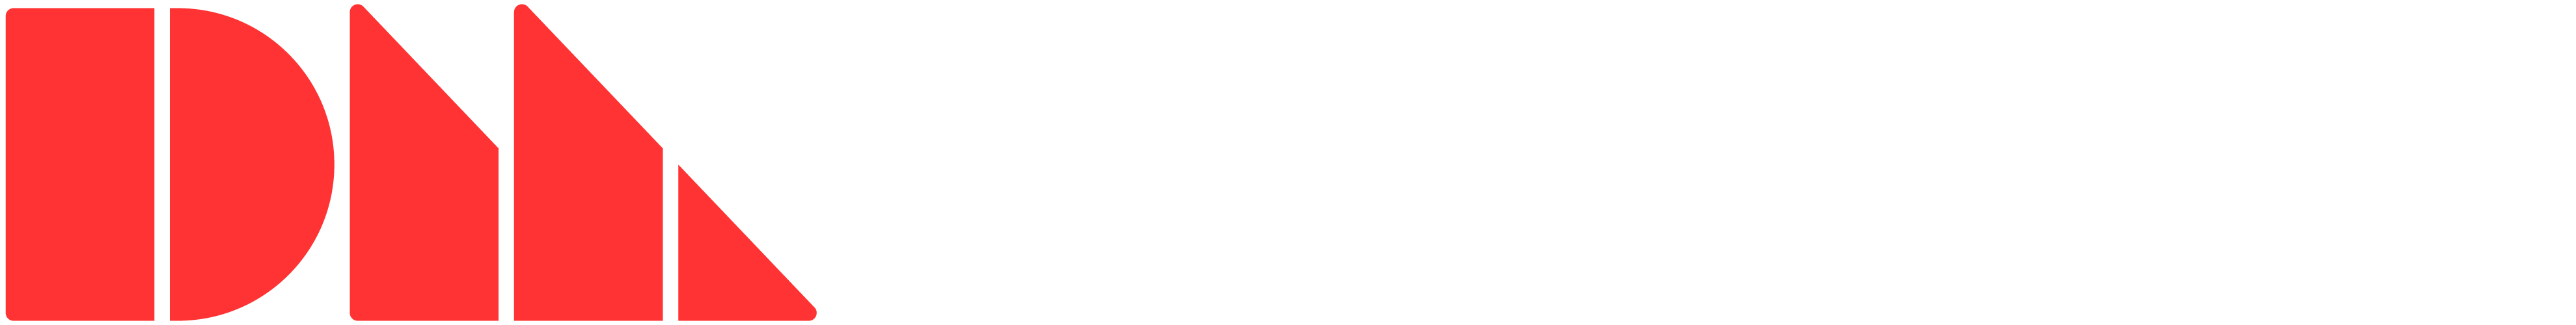 Desktop Metal（デスクトップメタル）社のロゴ